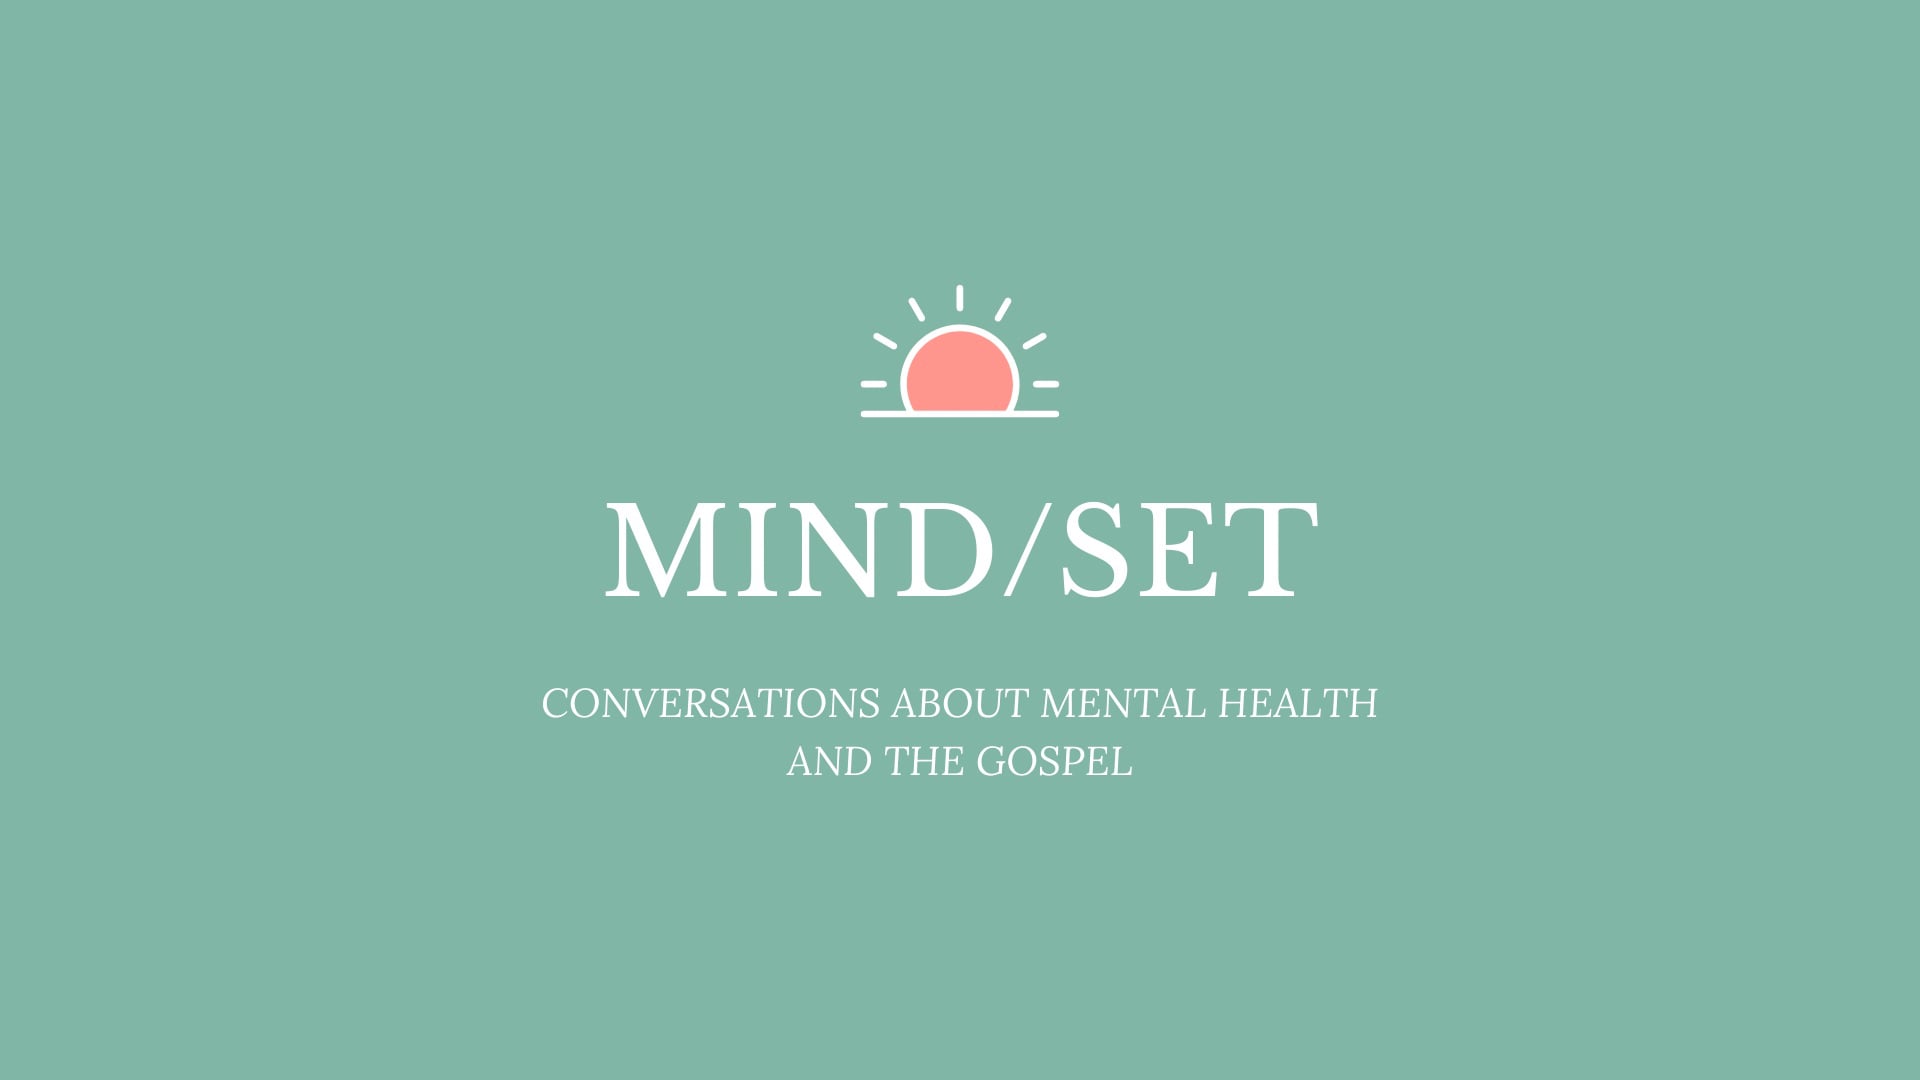 “Set Your Mind” – Week 1 of 4 in “Mind / Set” – 01.09.2022